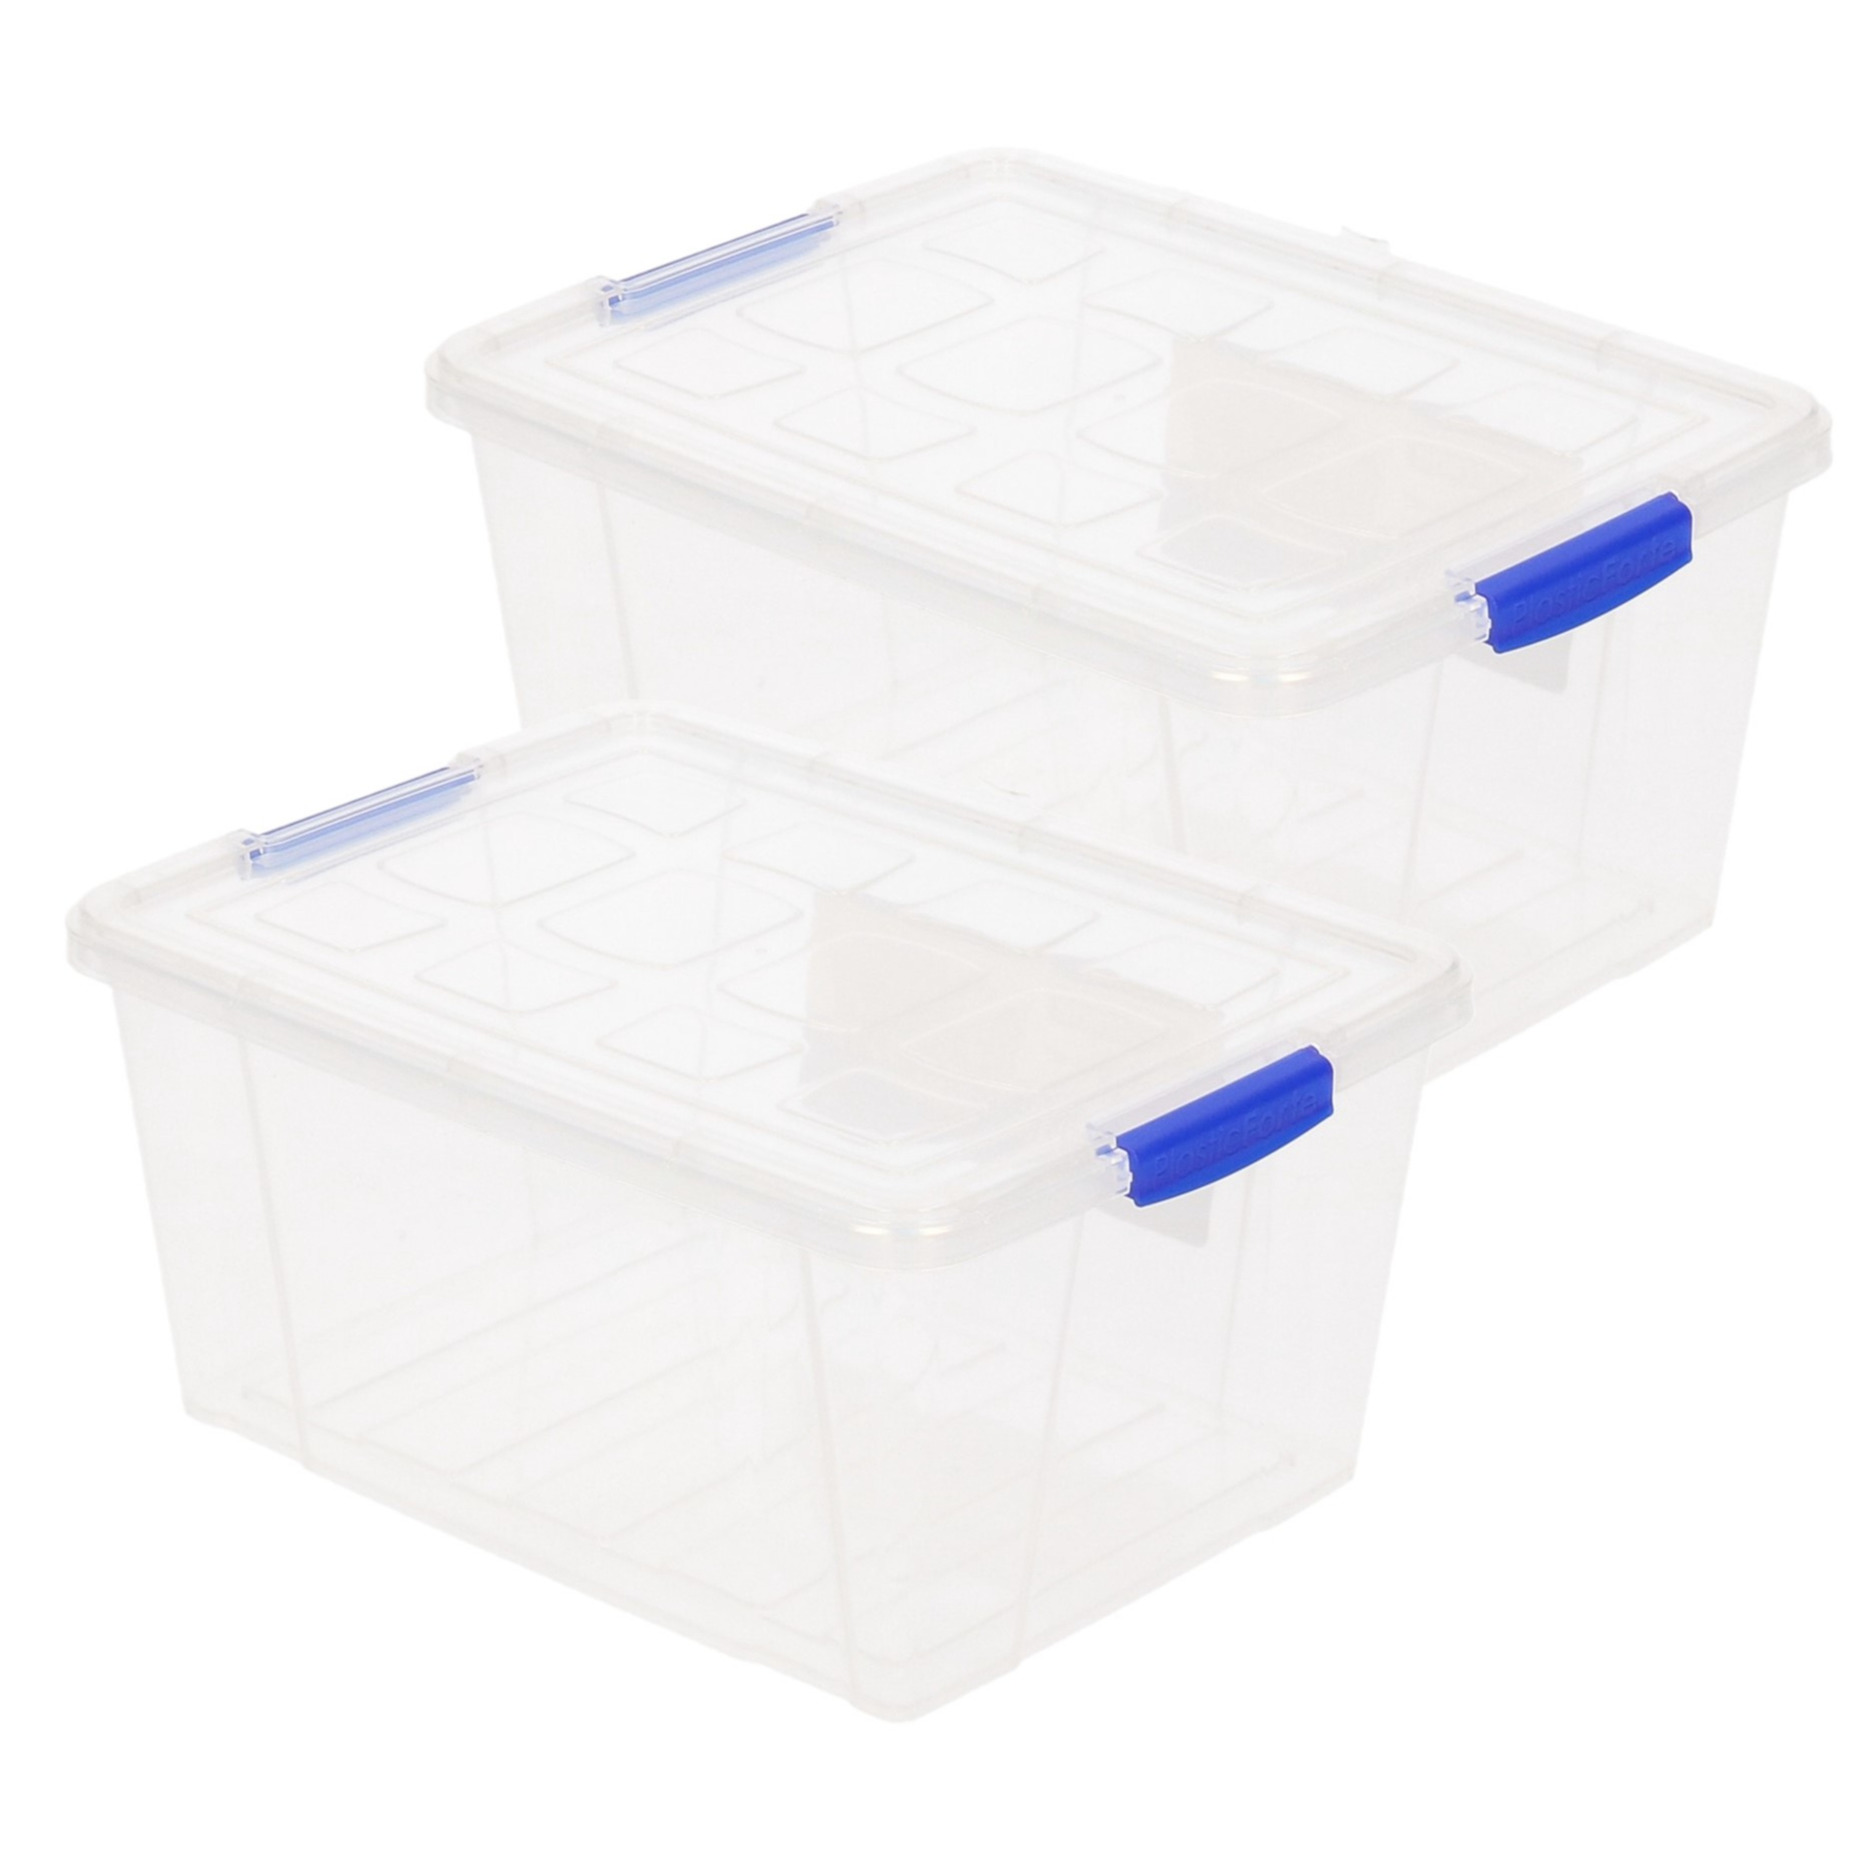 4x stuks opslagboxen-bakken-organizers met deksel 16 liter 40 x 30 x 21 cm transparant plastic